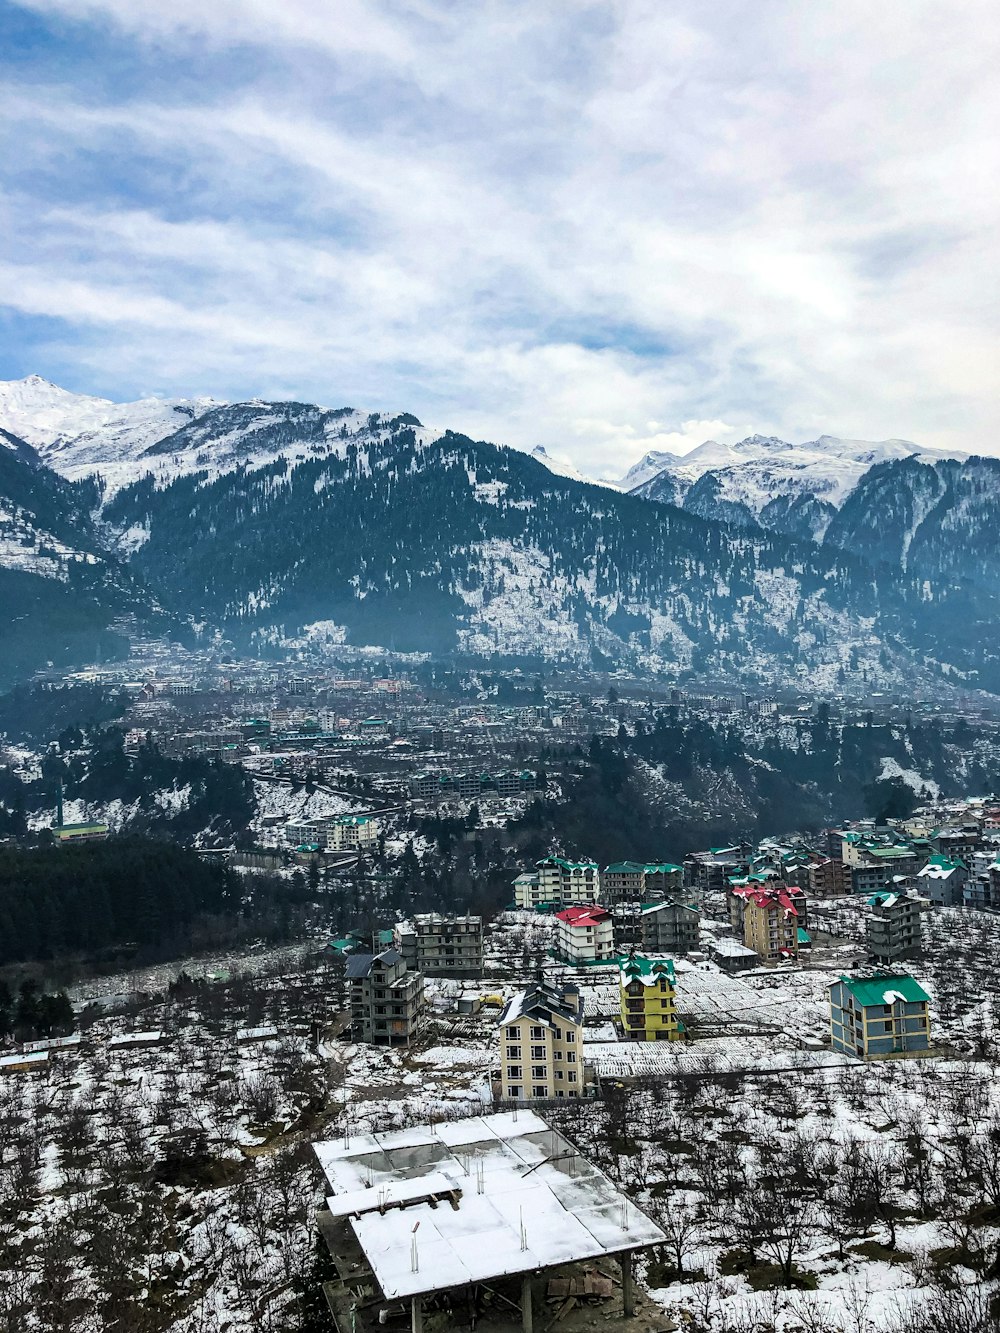 Veduta aerea della città vicino alle montagne innevate durante il giorno